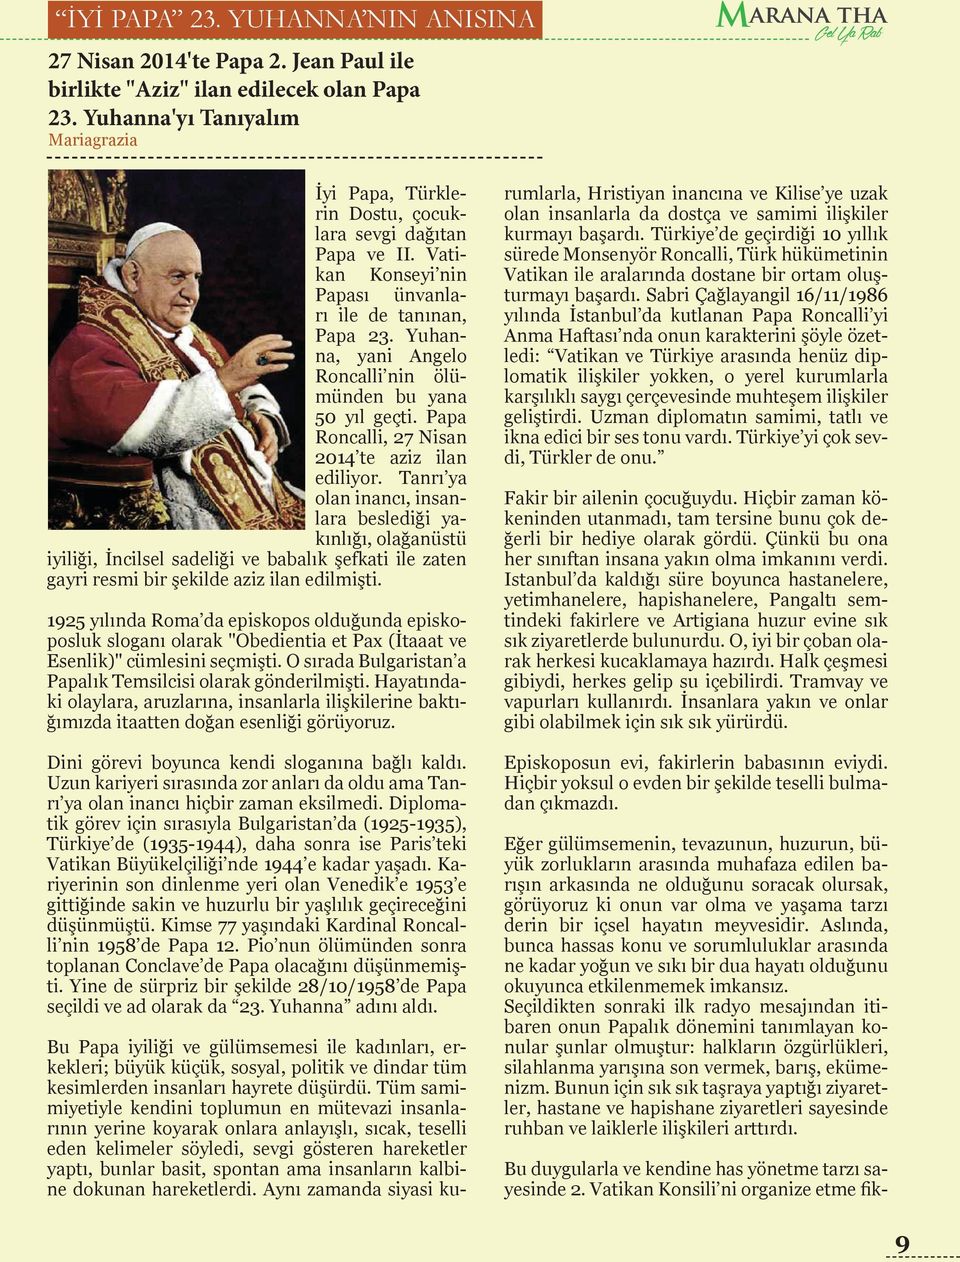 Yuhanna, yani Angelo Roncalli nin ölümünden bu yana 50 yıl geçti. Papa Roncalli, 27 Nisan 2014 te aziz ilan ediliyor.